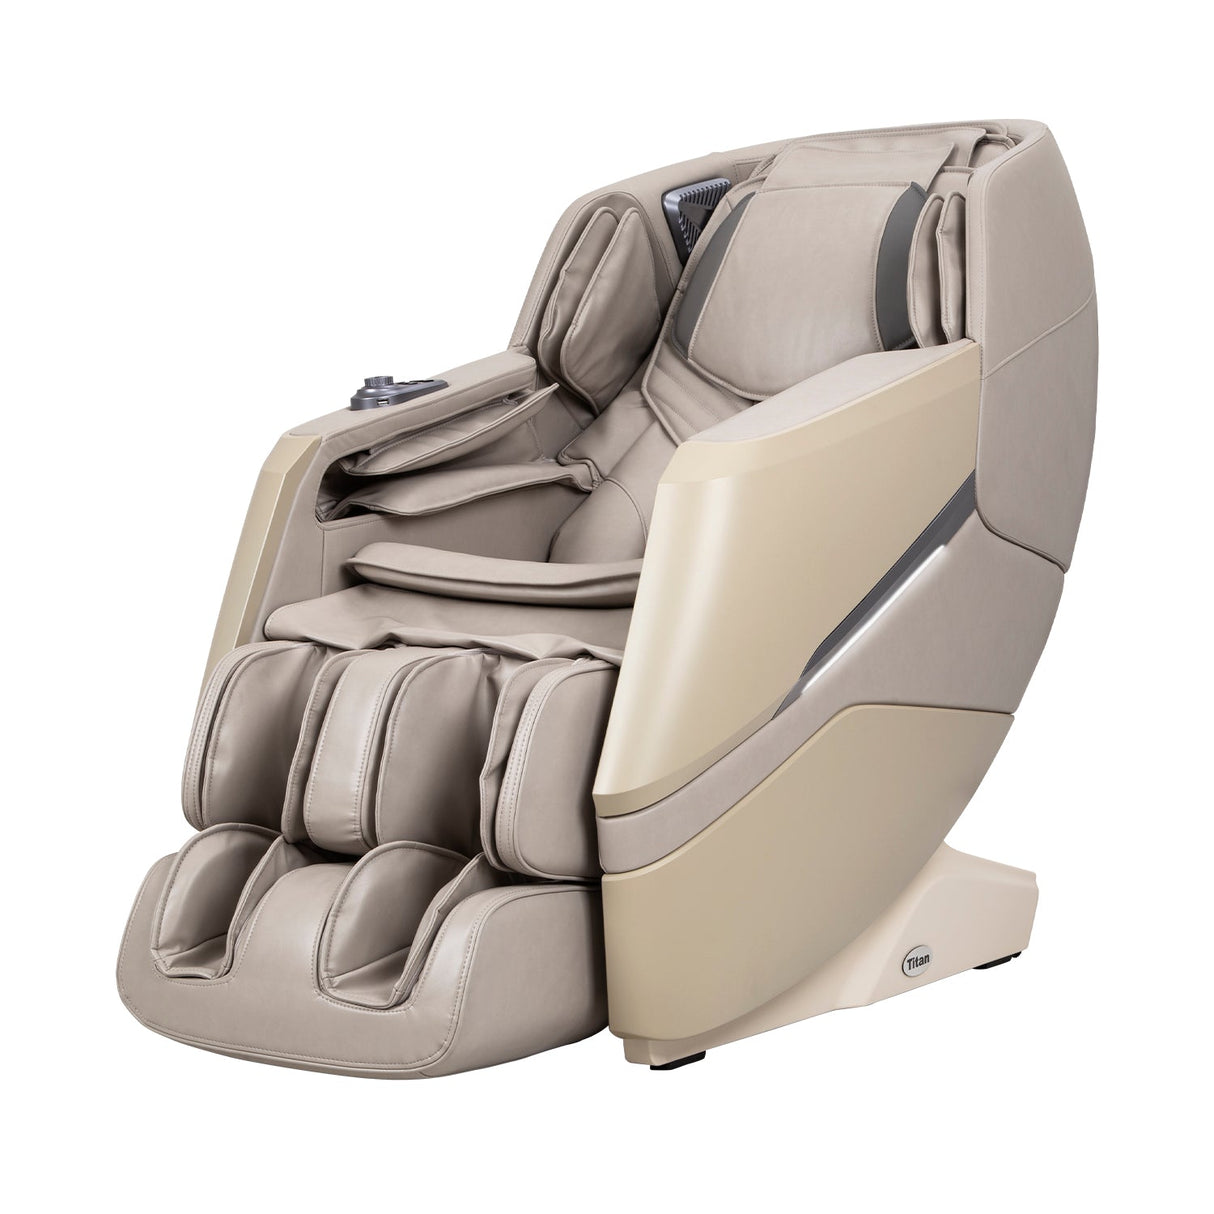 Titan | Luxe 3D Massage Chair